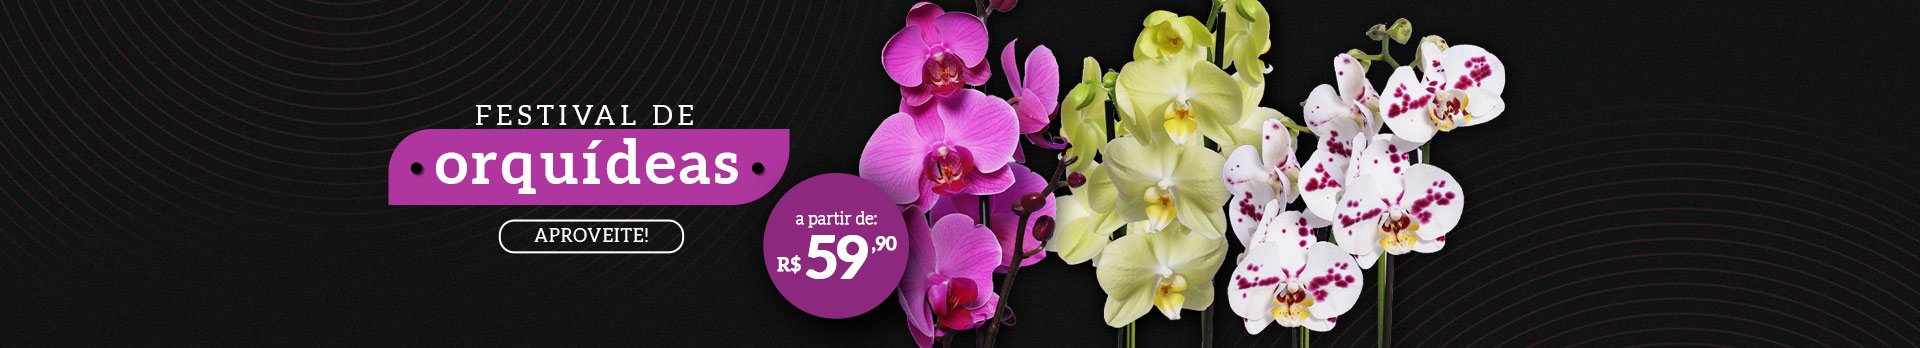 Orquídeas a partir de 59,90 - Super